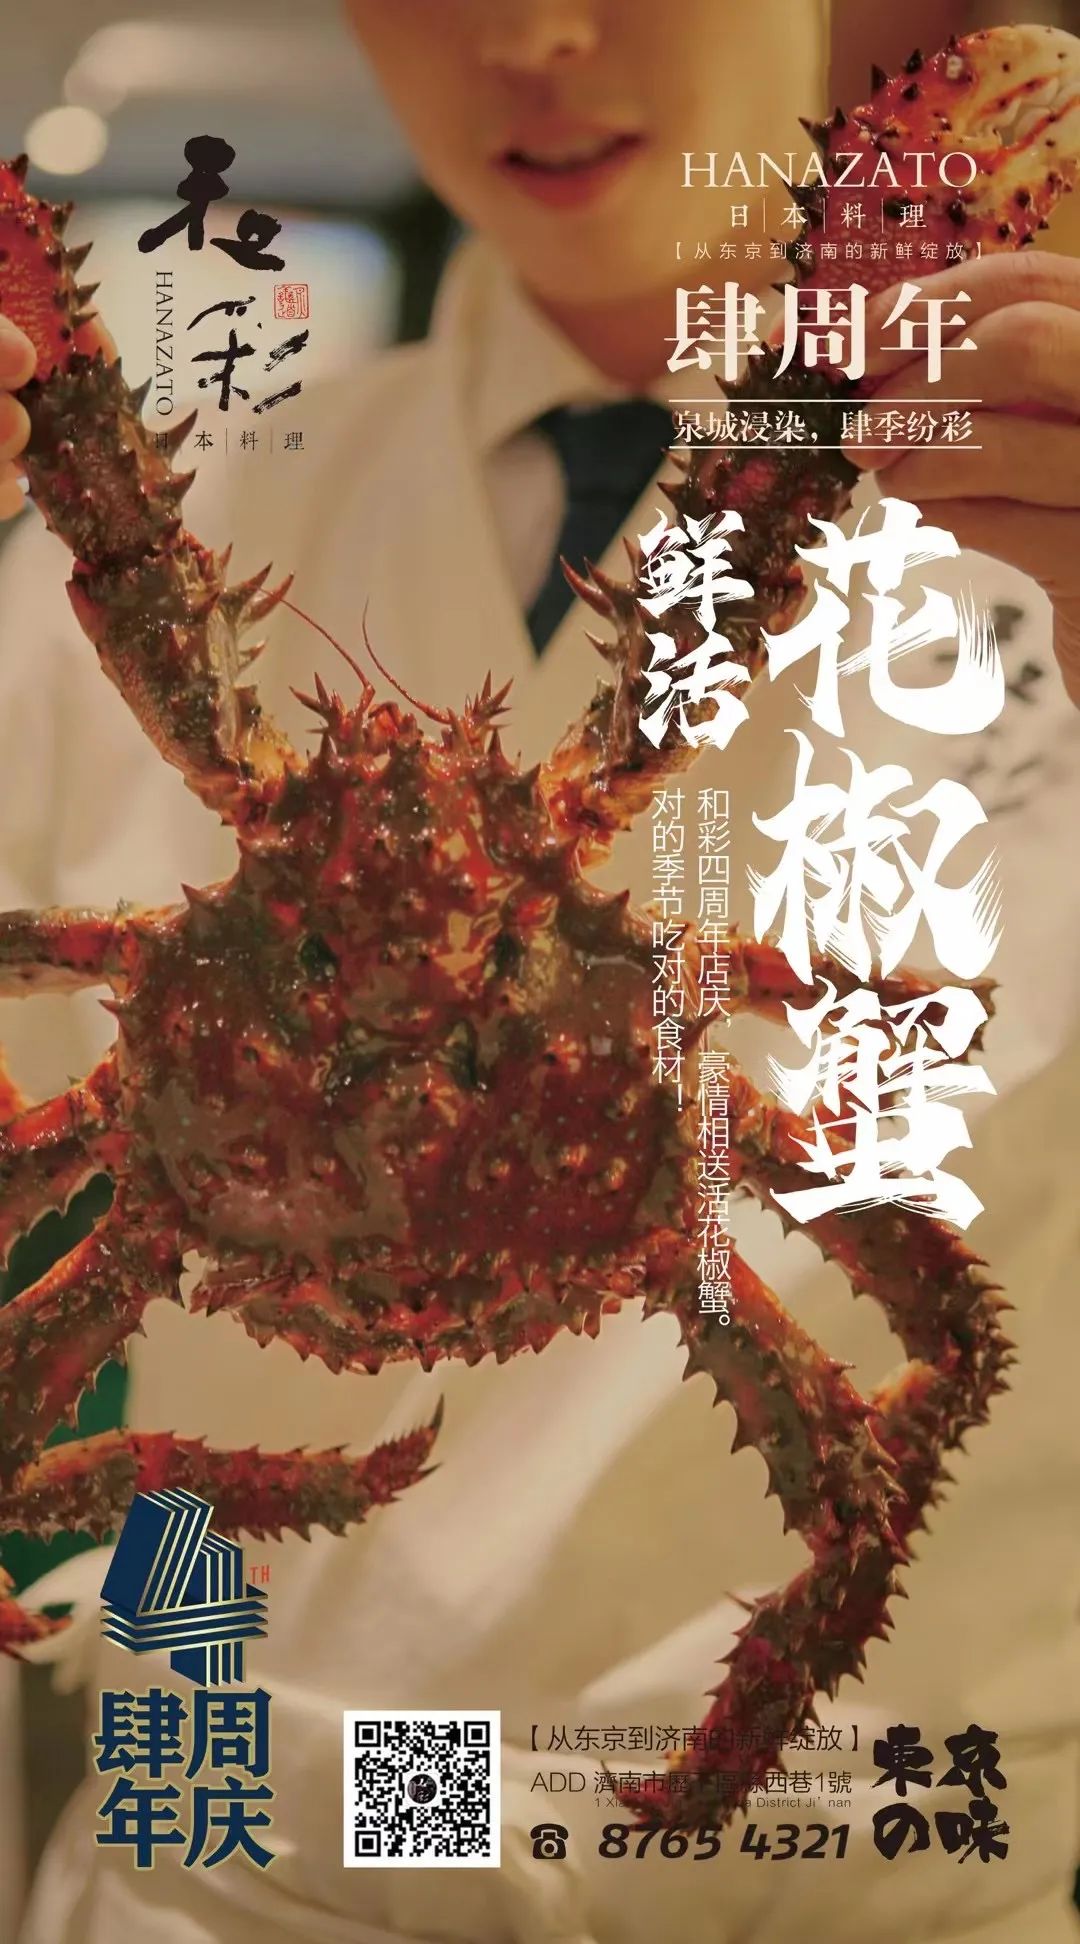 济南和彩料理4周年庆，鲜活花椒蟹+四重豪礼大放送